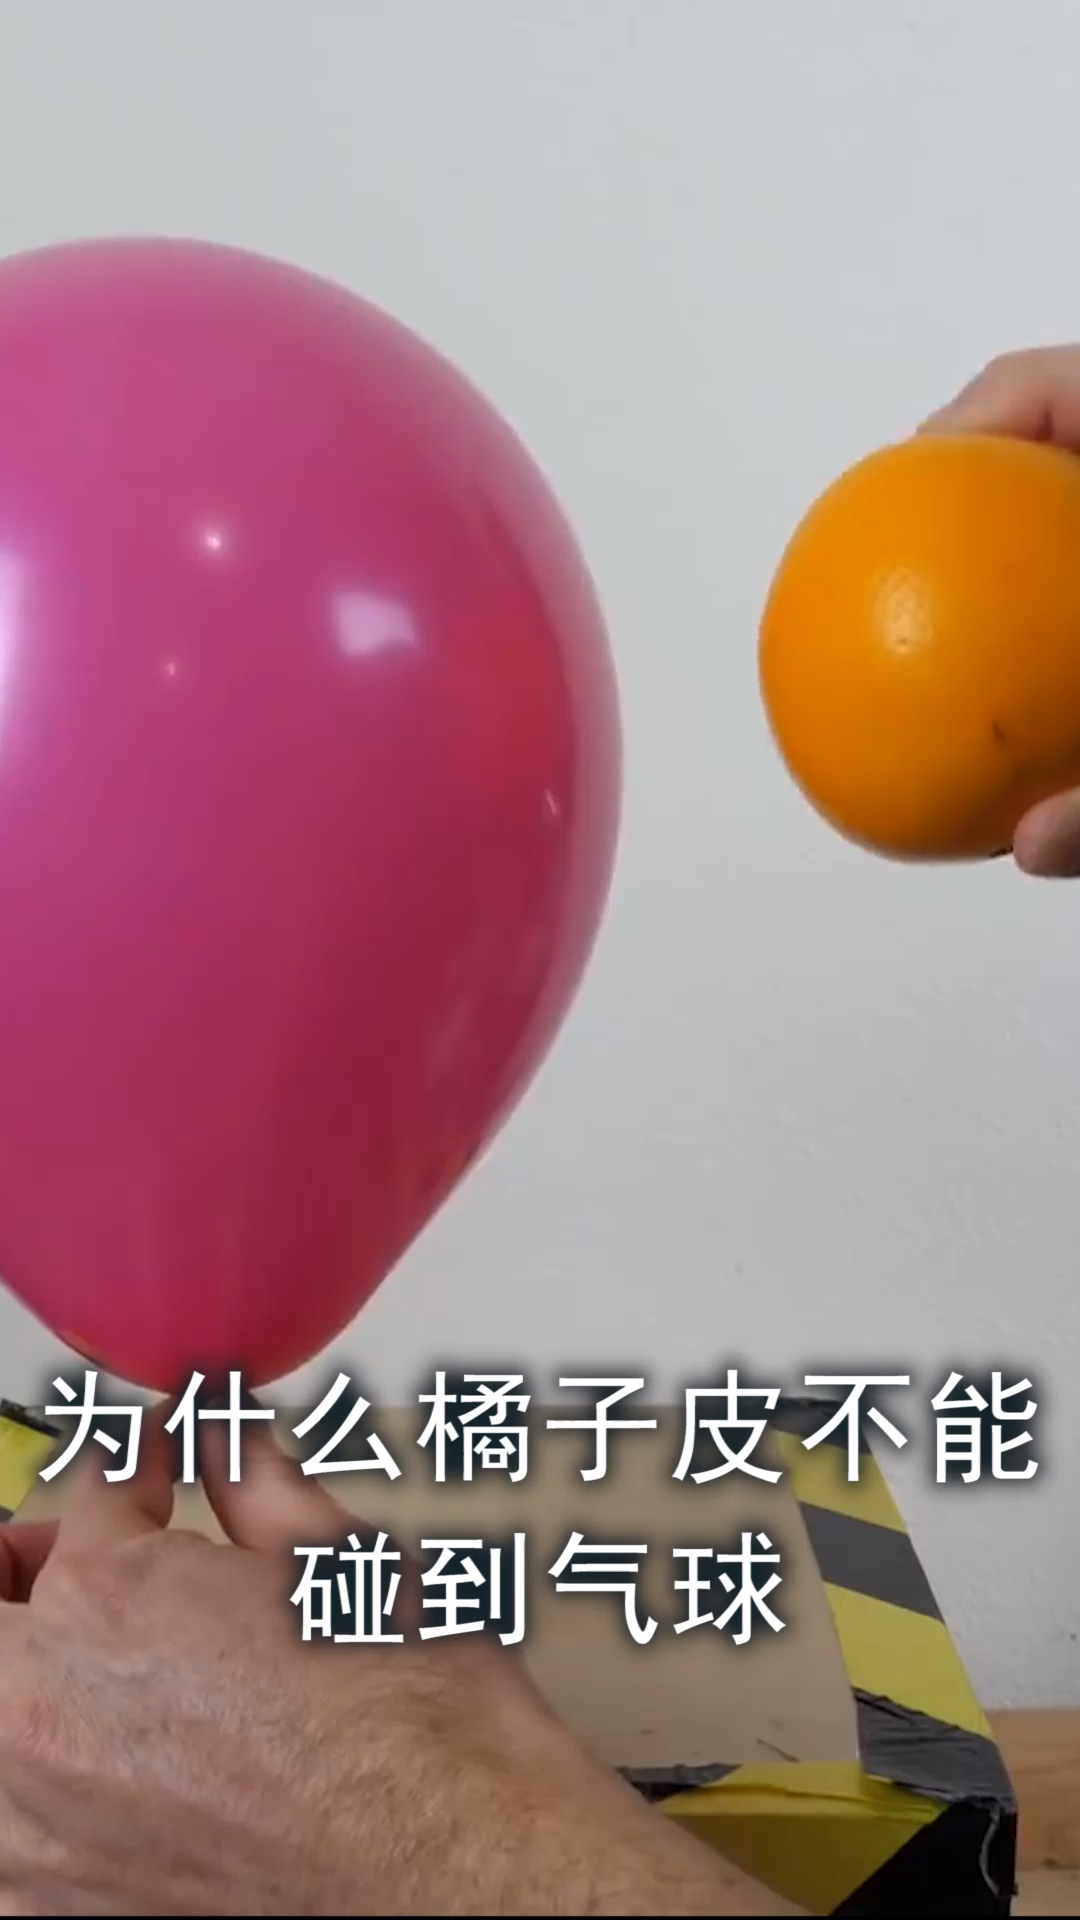 为什么橘子皮不能碰到气球,否则气球会瞬间爆炸这是真的假的?